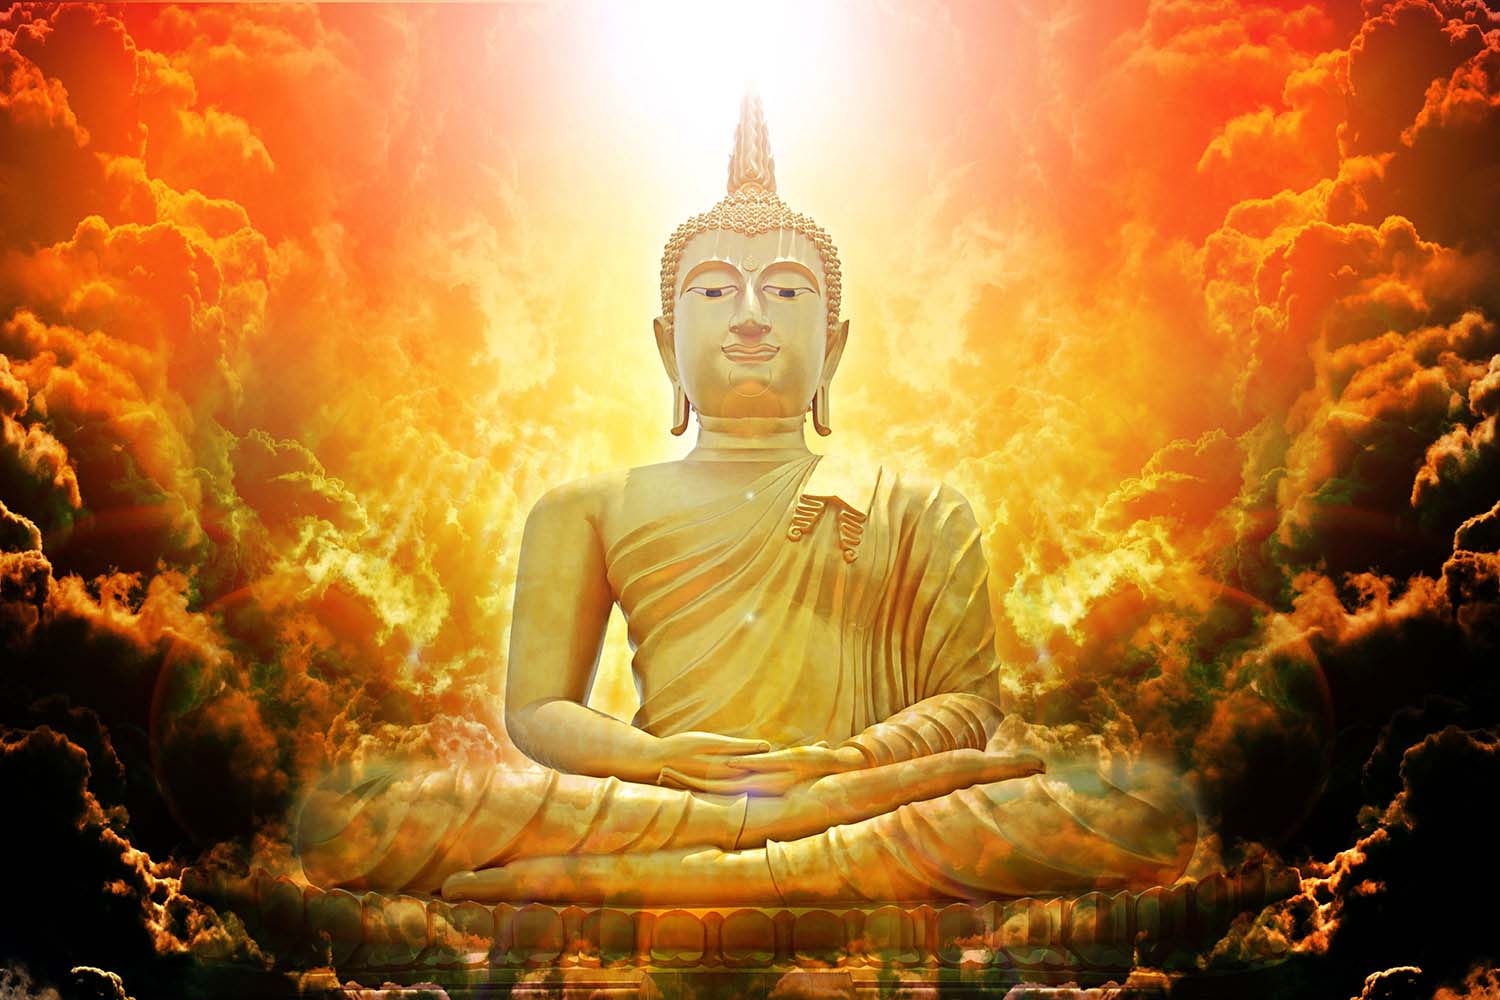 Phật 3D: Hãy chiêm ngưỡng những hình ảnh Phật 3D sống động, giống như Phật đang đứng trước mắt bạn. Thật sự ngoạn mục và đầy cảm xúc, đảm bảo sẽ khiến bạn xao xuyến và cảm thấy yên bình trong tâm hồn.